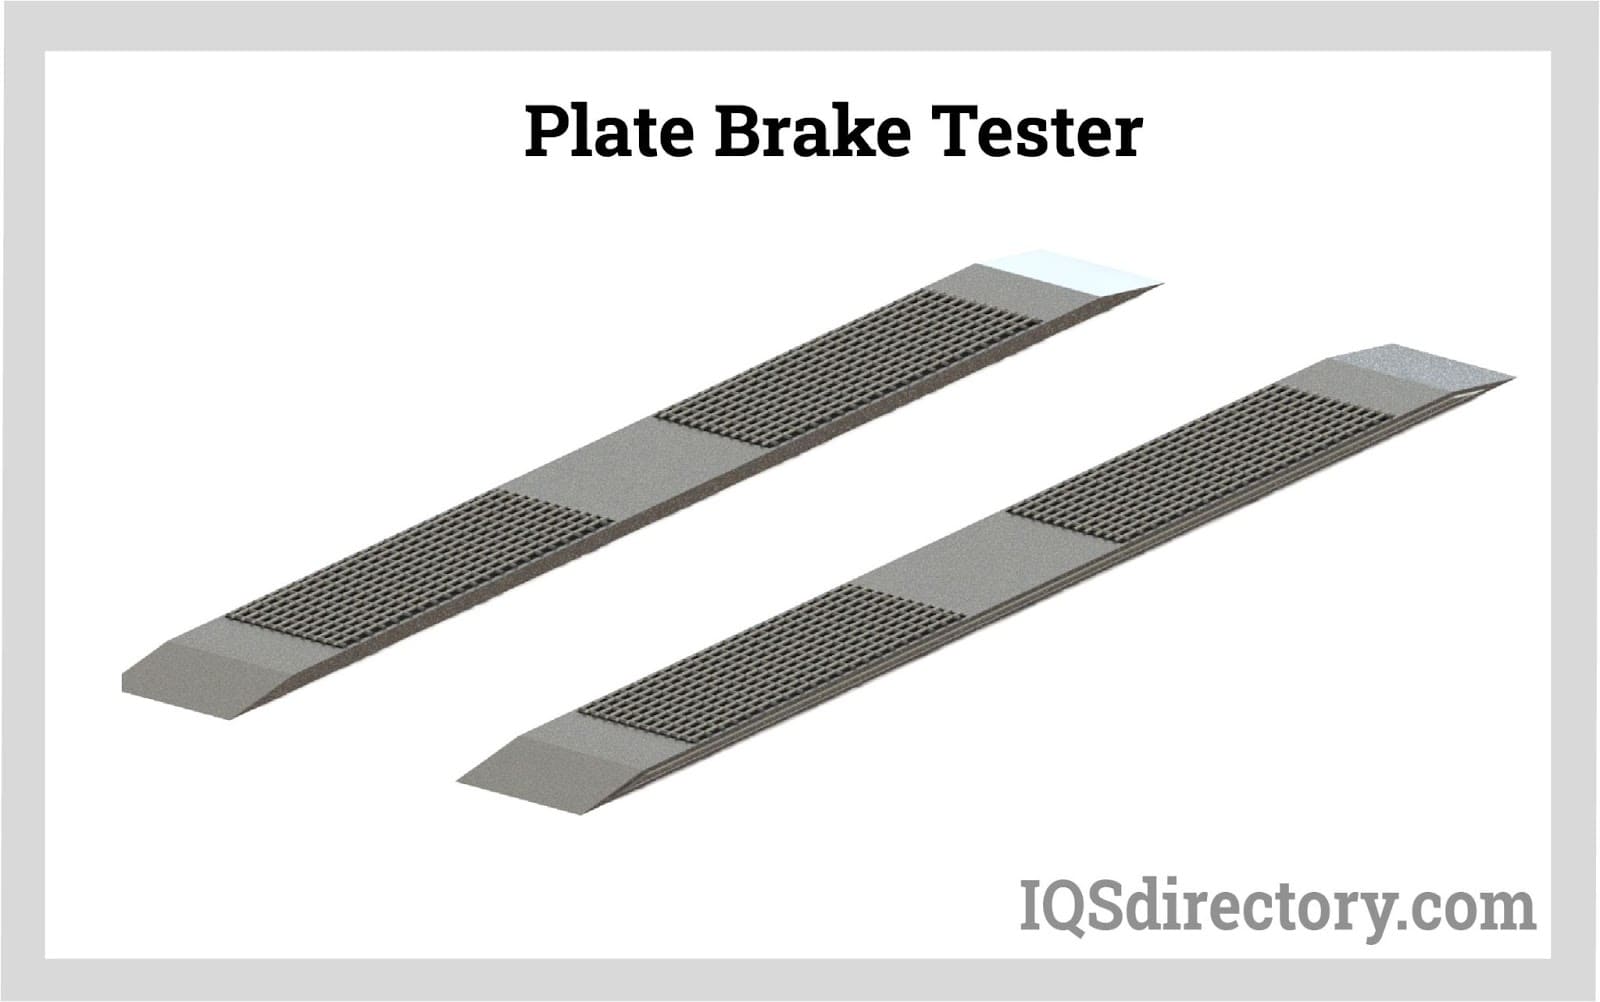 Plate Brake Tester